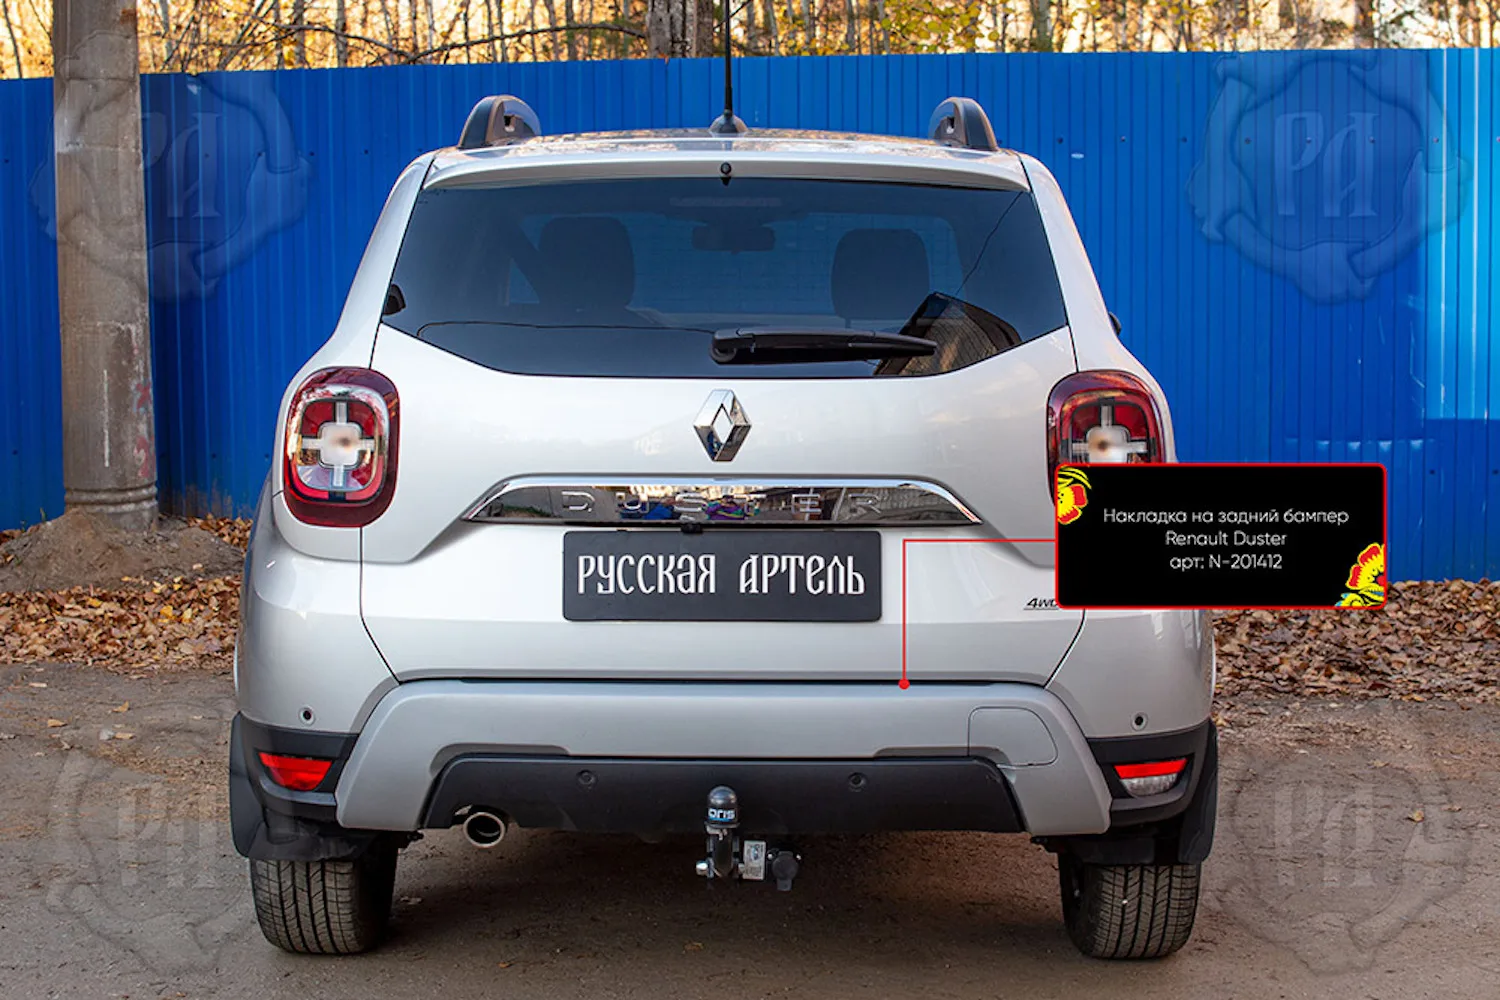 Накладка на задний бампер Русская артель для автомобиля Renault Duster 2021-н.в. Аксессуар